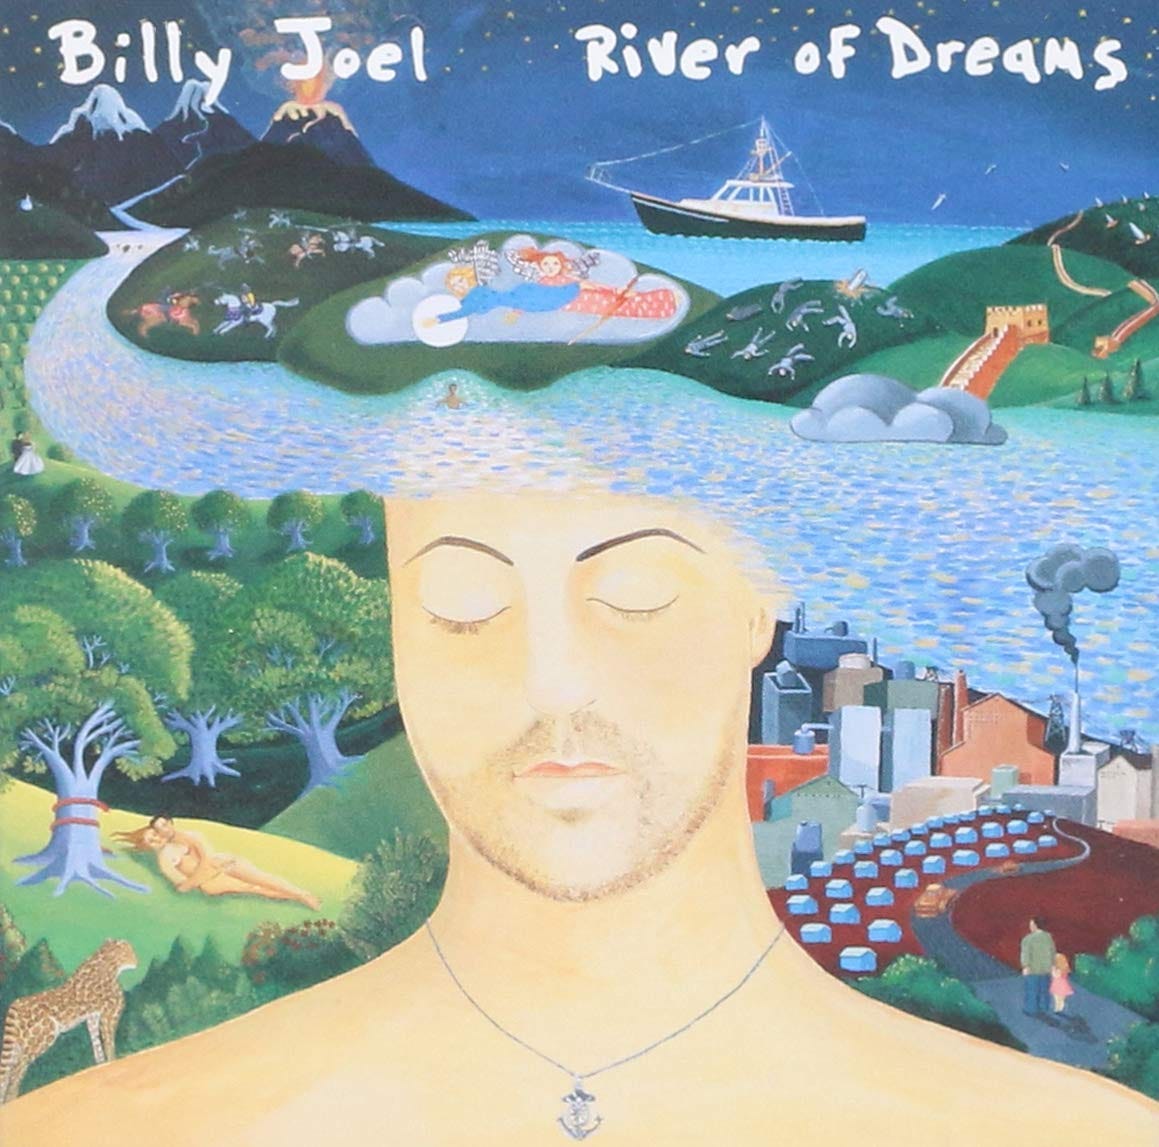 Amazon.com: River Of Dreams: CDs y Vinilo